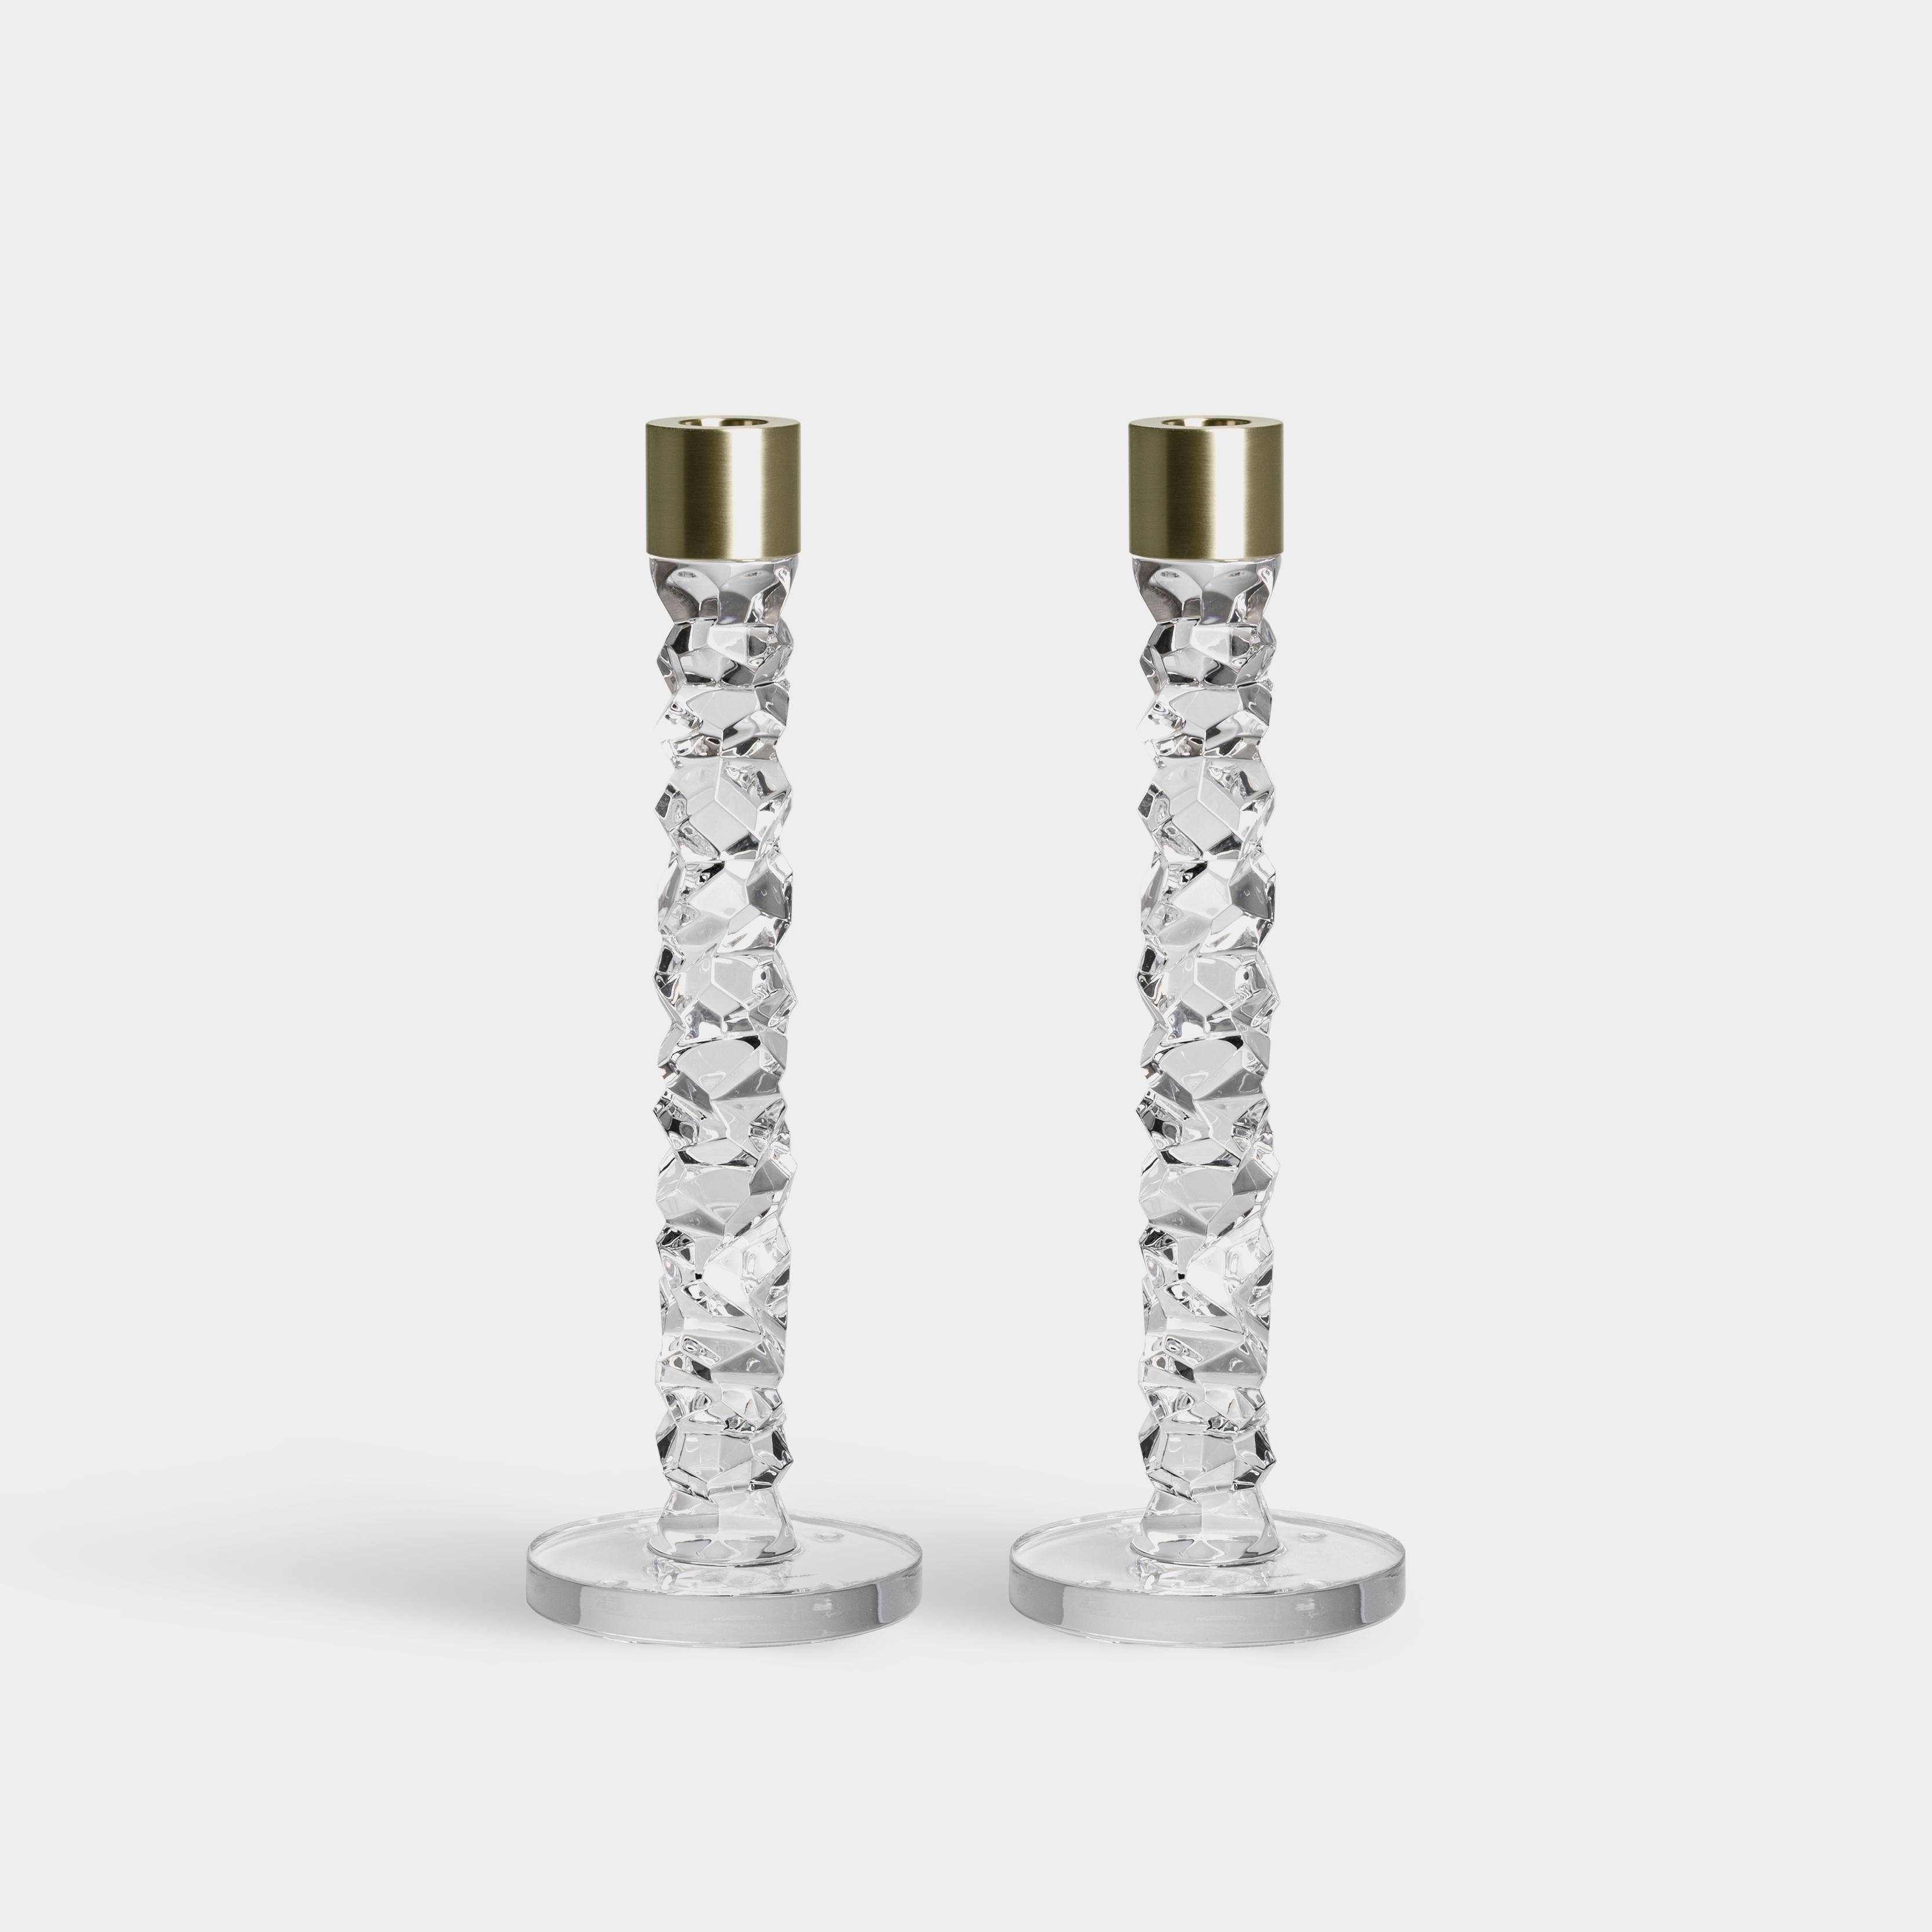 La collection Carat est basée sur une interprétation contemporaine du verre taillé traditionnel qui a fait la renommée mondiale d'Orrefors. La géométrie irrégulière produit de magnifiques reflets de lumière dans le cristal. Le grand chandelier en